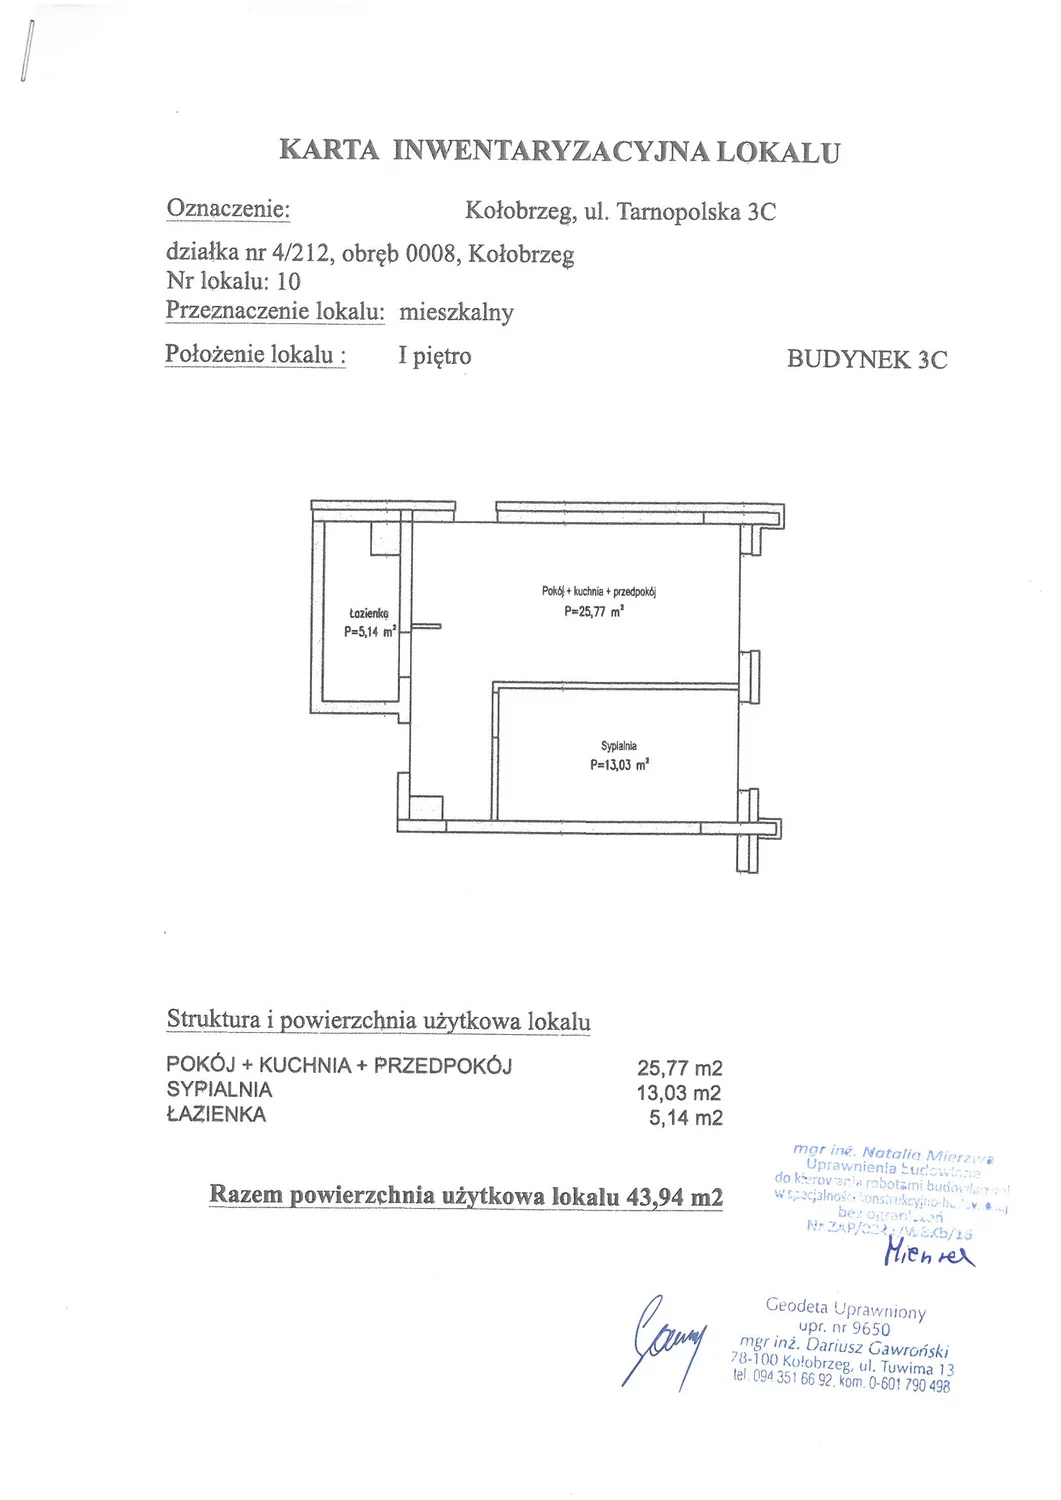 Apartament 43,94 m², piętro 1, oferta nr C10, Miejski Las, Kołobrzeg, Podczele, ul. Tarnopolska 3 A, B, C